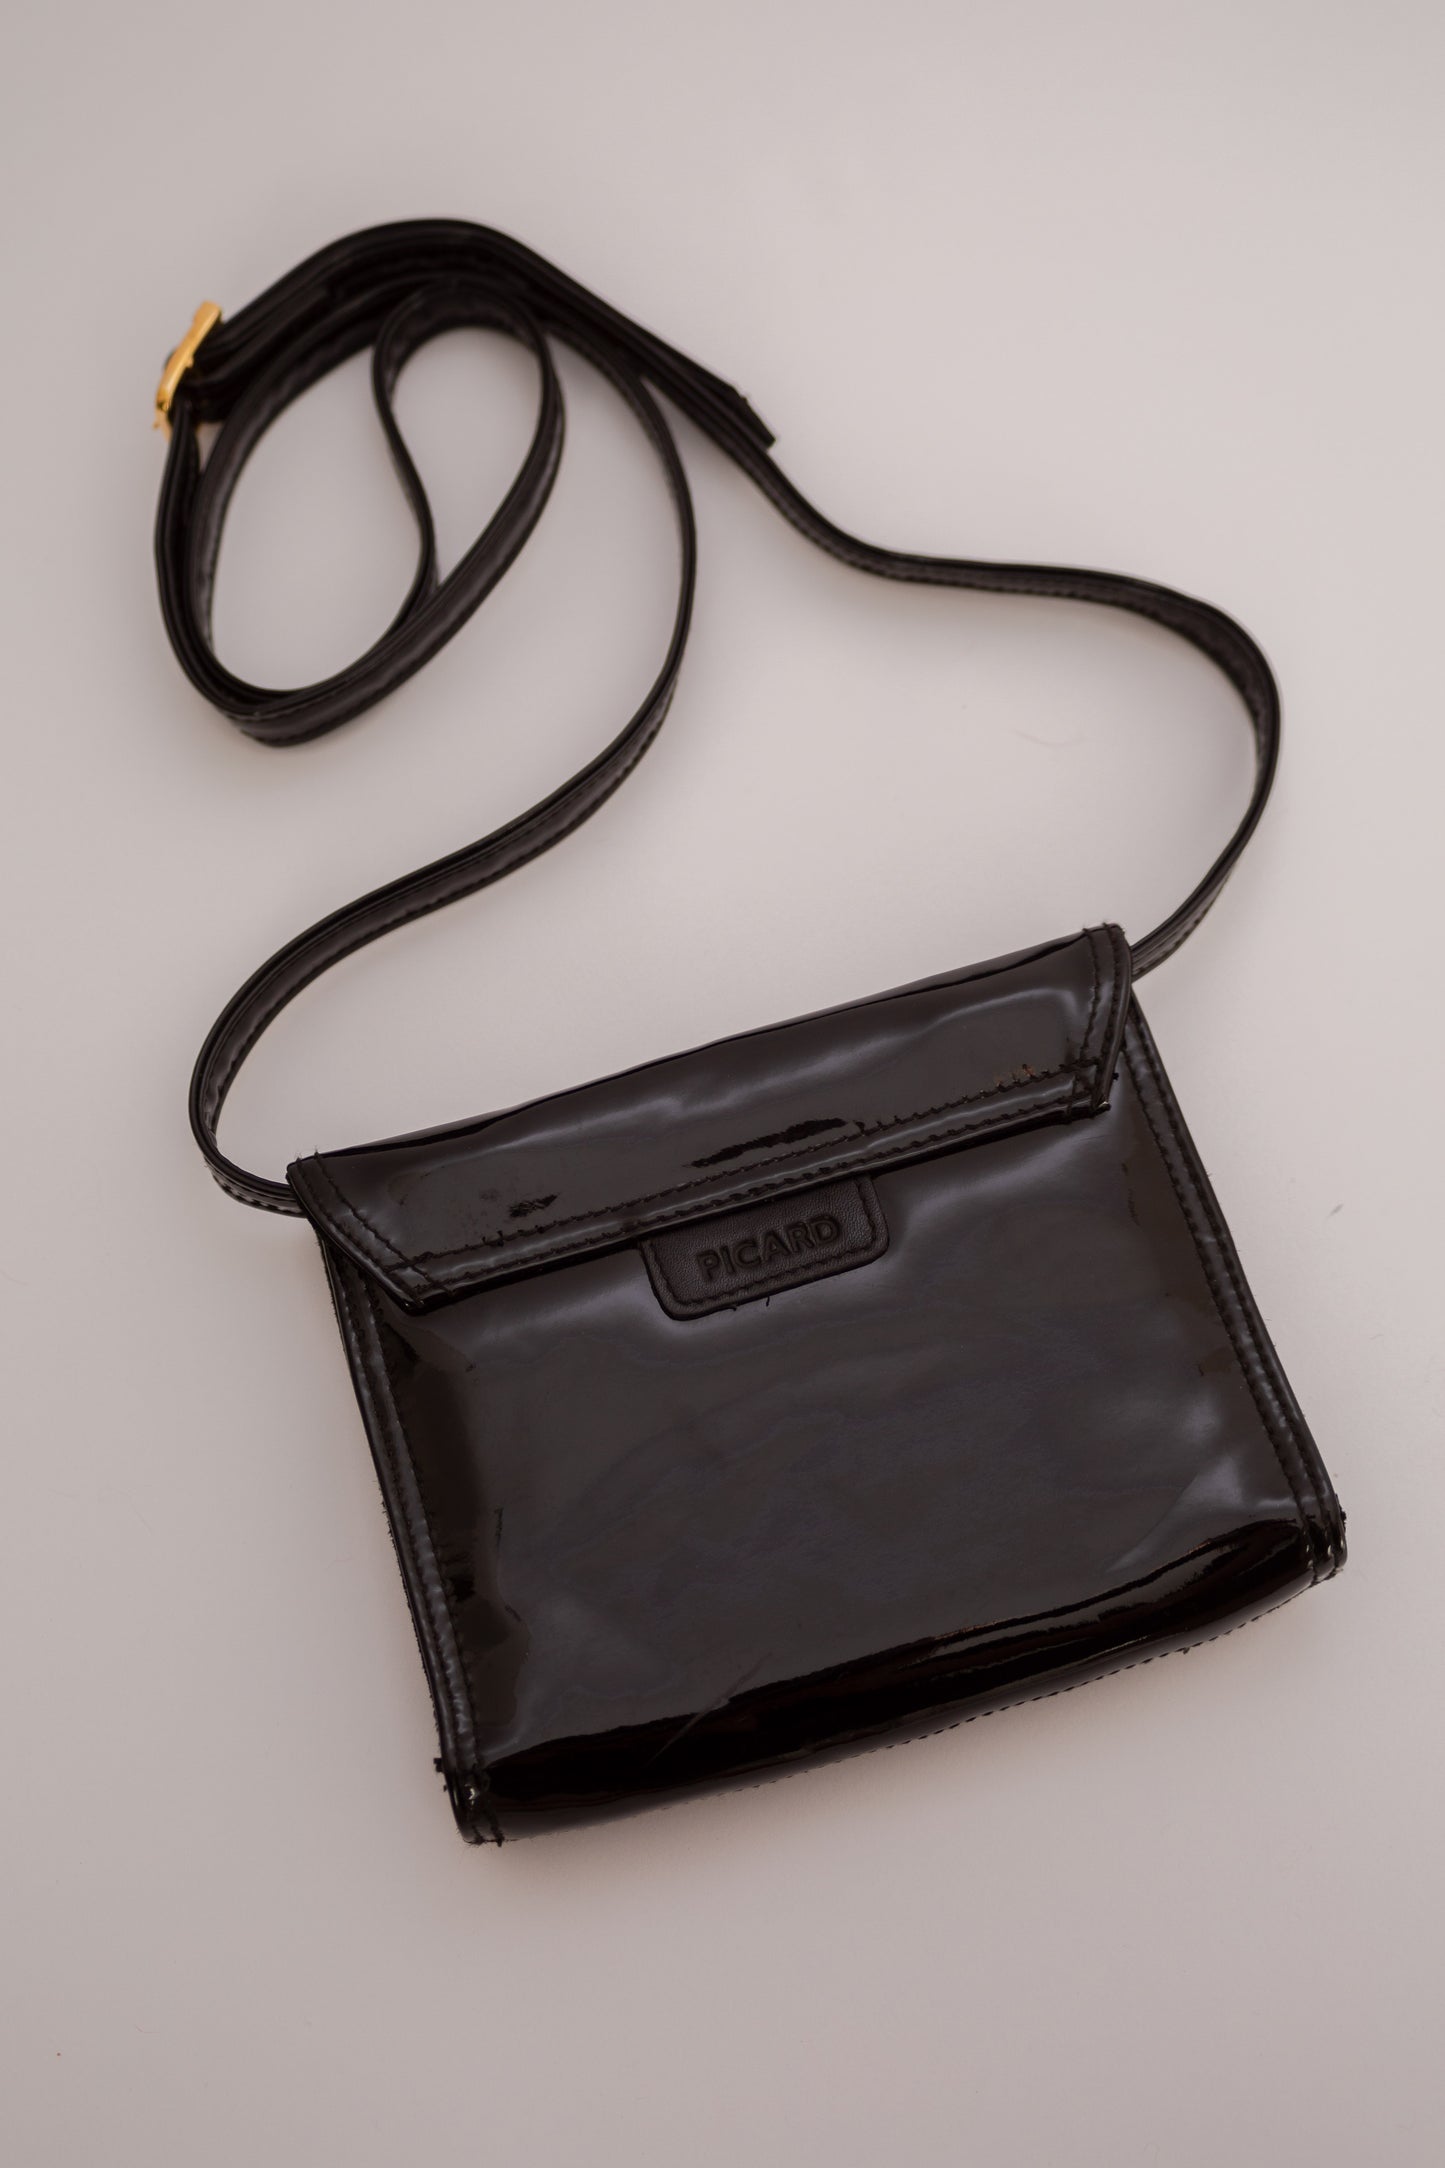 Patent leather mini bag